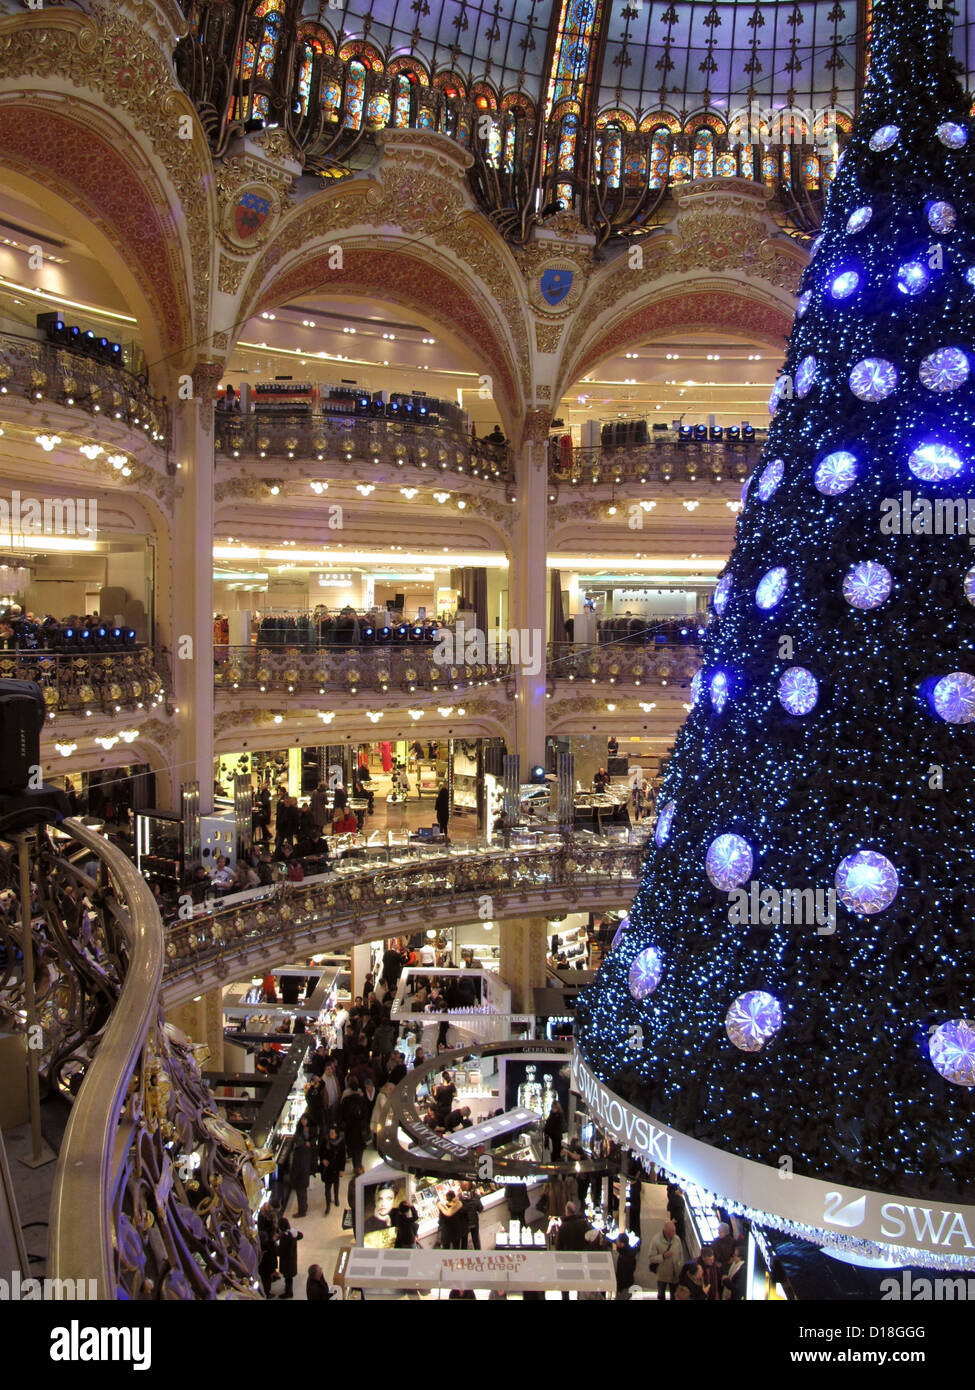 Un árbol de navidad de lujo es retratada en la rotonda de las Galeries  Lafayette en París, Francia, el 10 de diciembre de 2012. Está decorado con  enormes bolas de cristal Swarovski